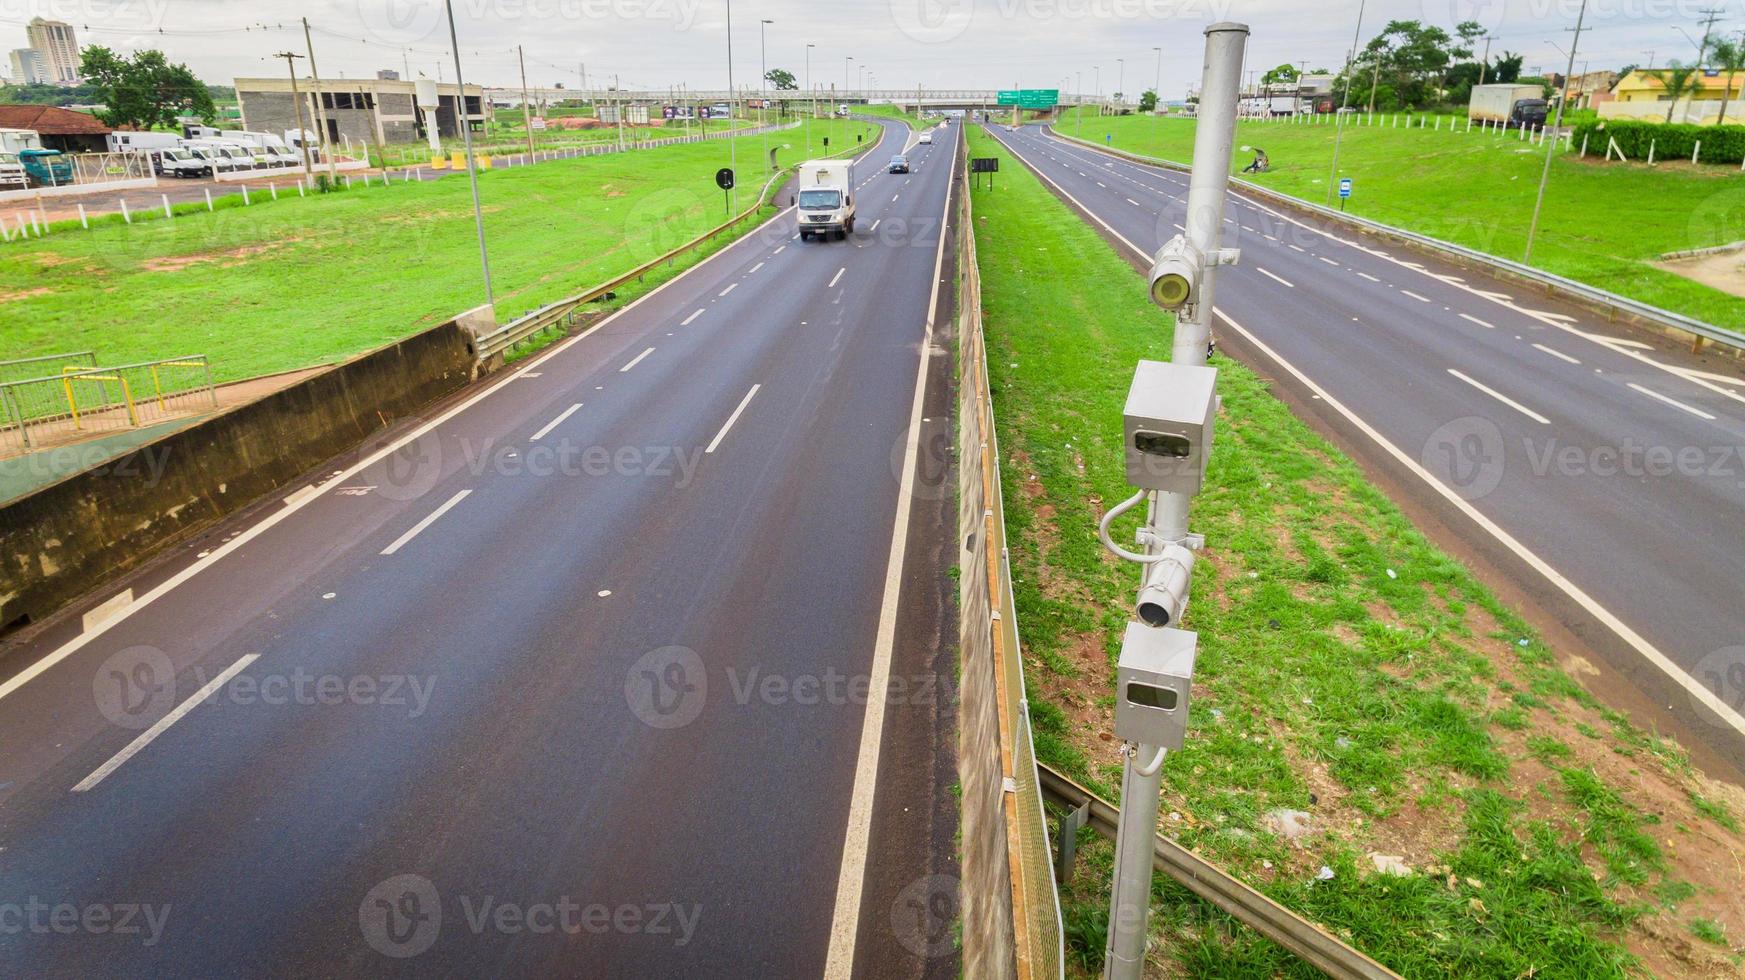 trafikradar med hastighetsövervakningskamera på en motorväg. foto